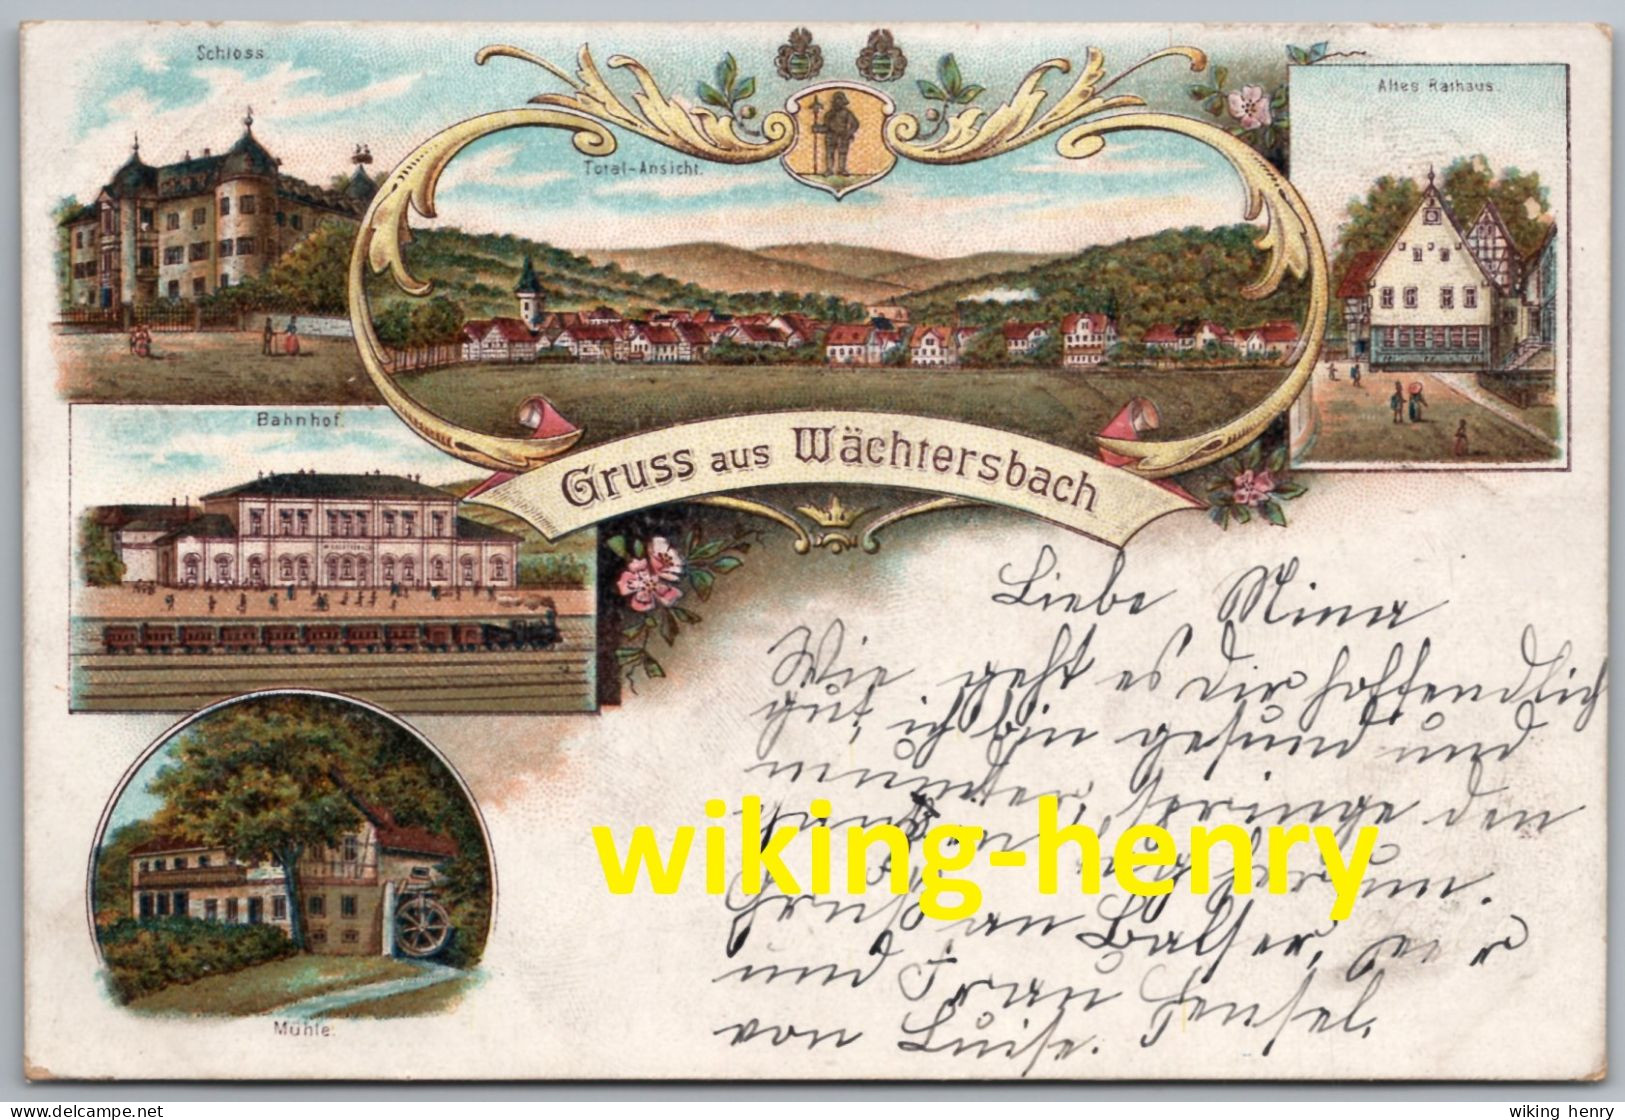 Wächtersbach - Gruss Aus Wächtersbach - Schloss Bahnhof Mühle Totalansicht Altes Rathaus - Litho Gelaufen 1899 - Main - Kinzig Kreis